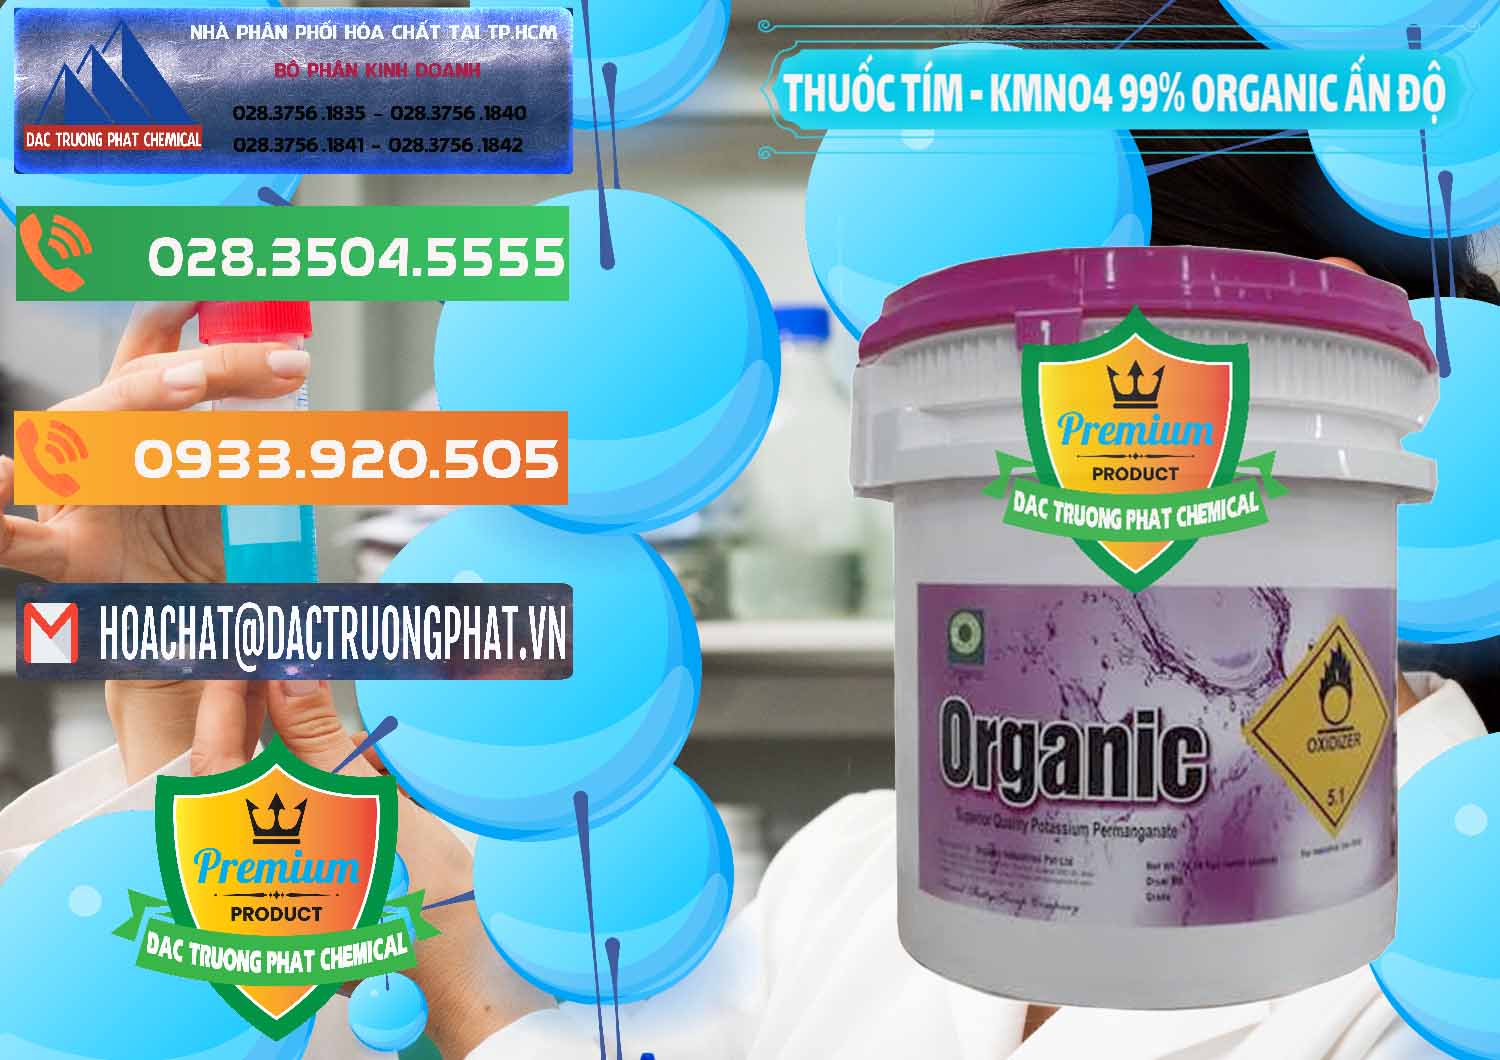 Đơn vị phân phối ( bán ) Thuốc Tím - KMNO4 99% Organic Ấn Độ India - 0216 - Cung cấp hóa chất tại TP.HCM - hoachatxulynuoc.com.vn